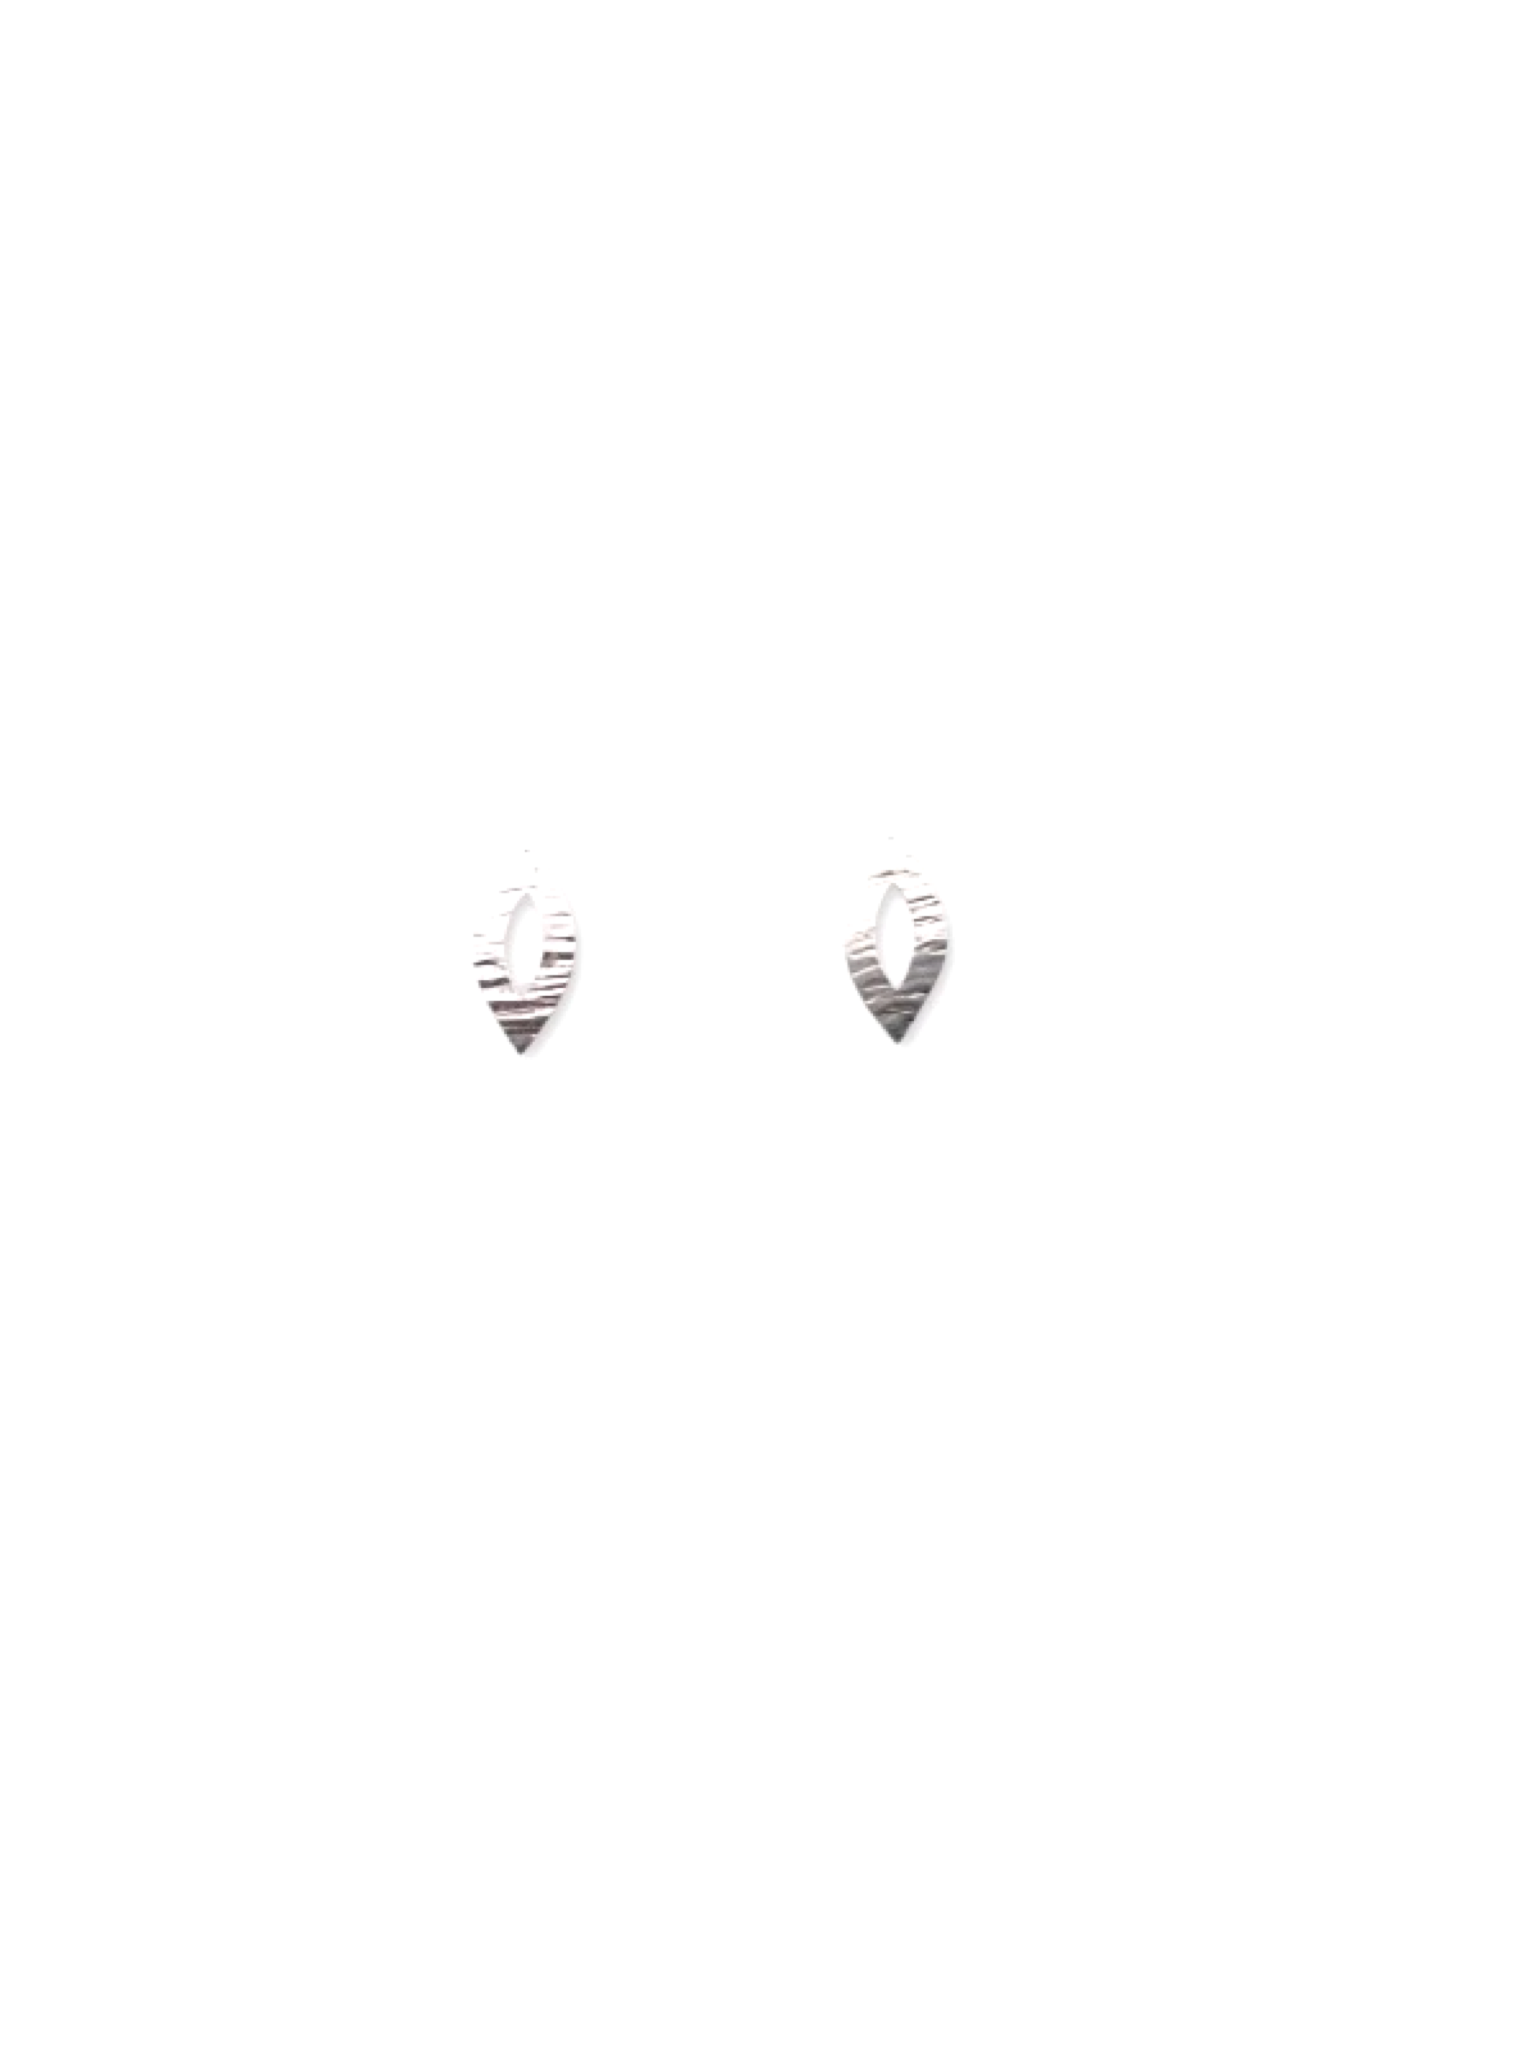 “OVERSIGHT” EARRINGS